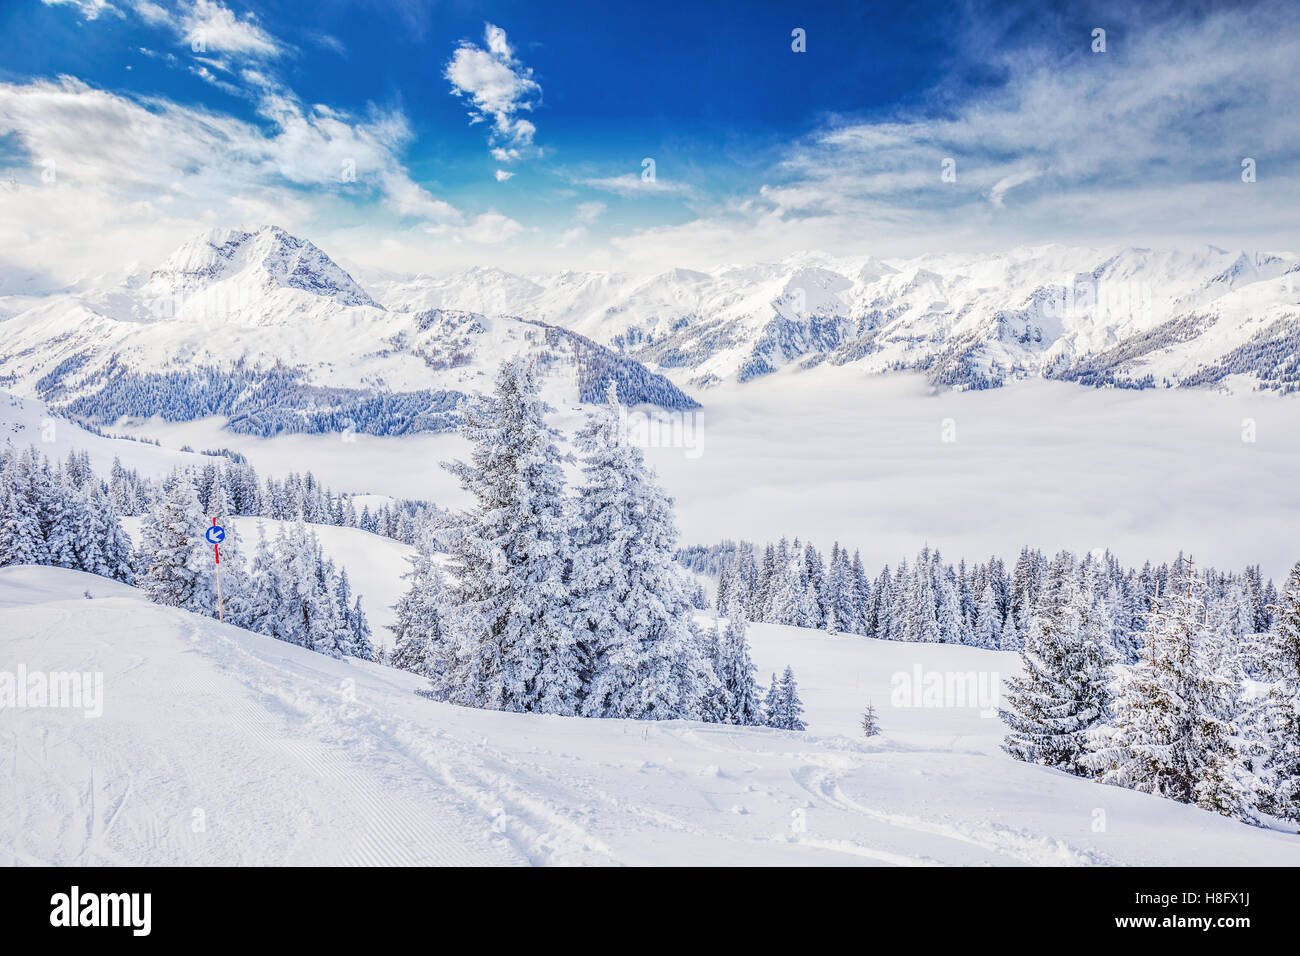 Bäumen fallenden Neuschnee im Tiroler Alpen vom Skigebiet Kitzbühel - eines der besten Skigebiet der Welt. Stockfoto